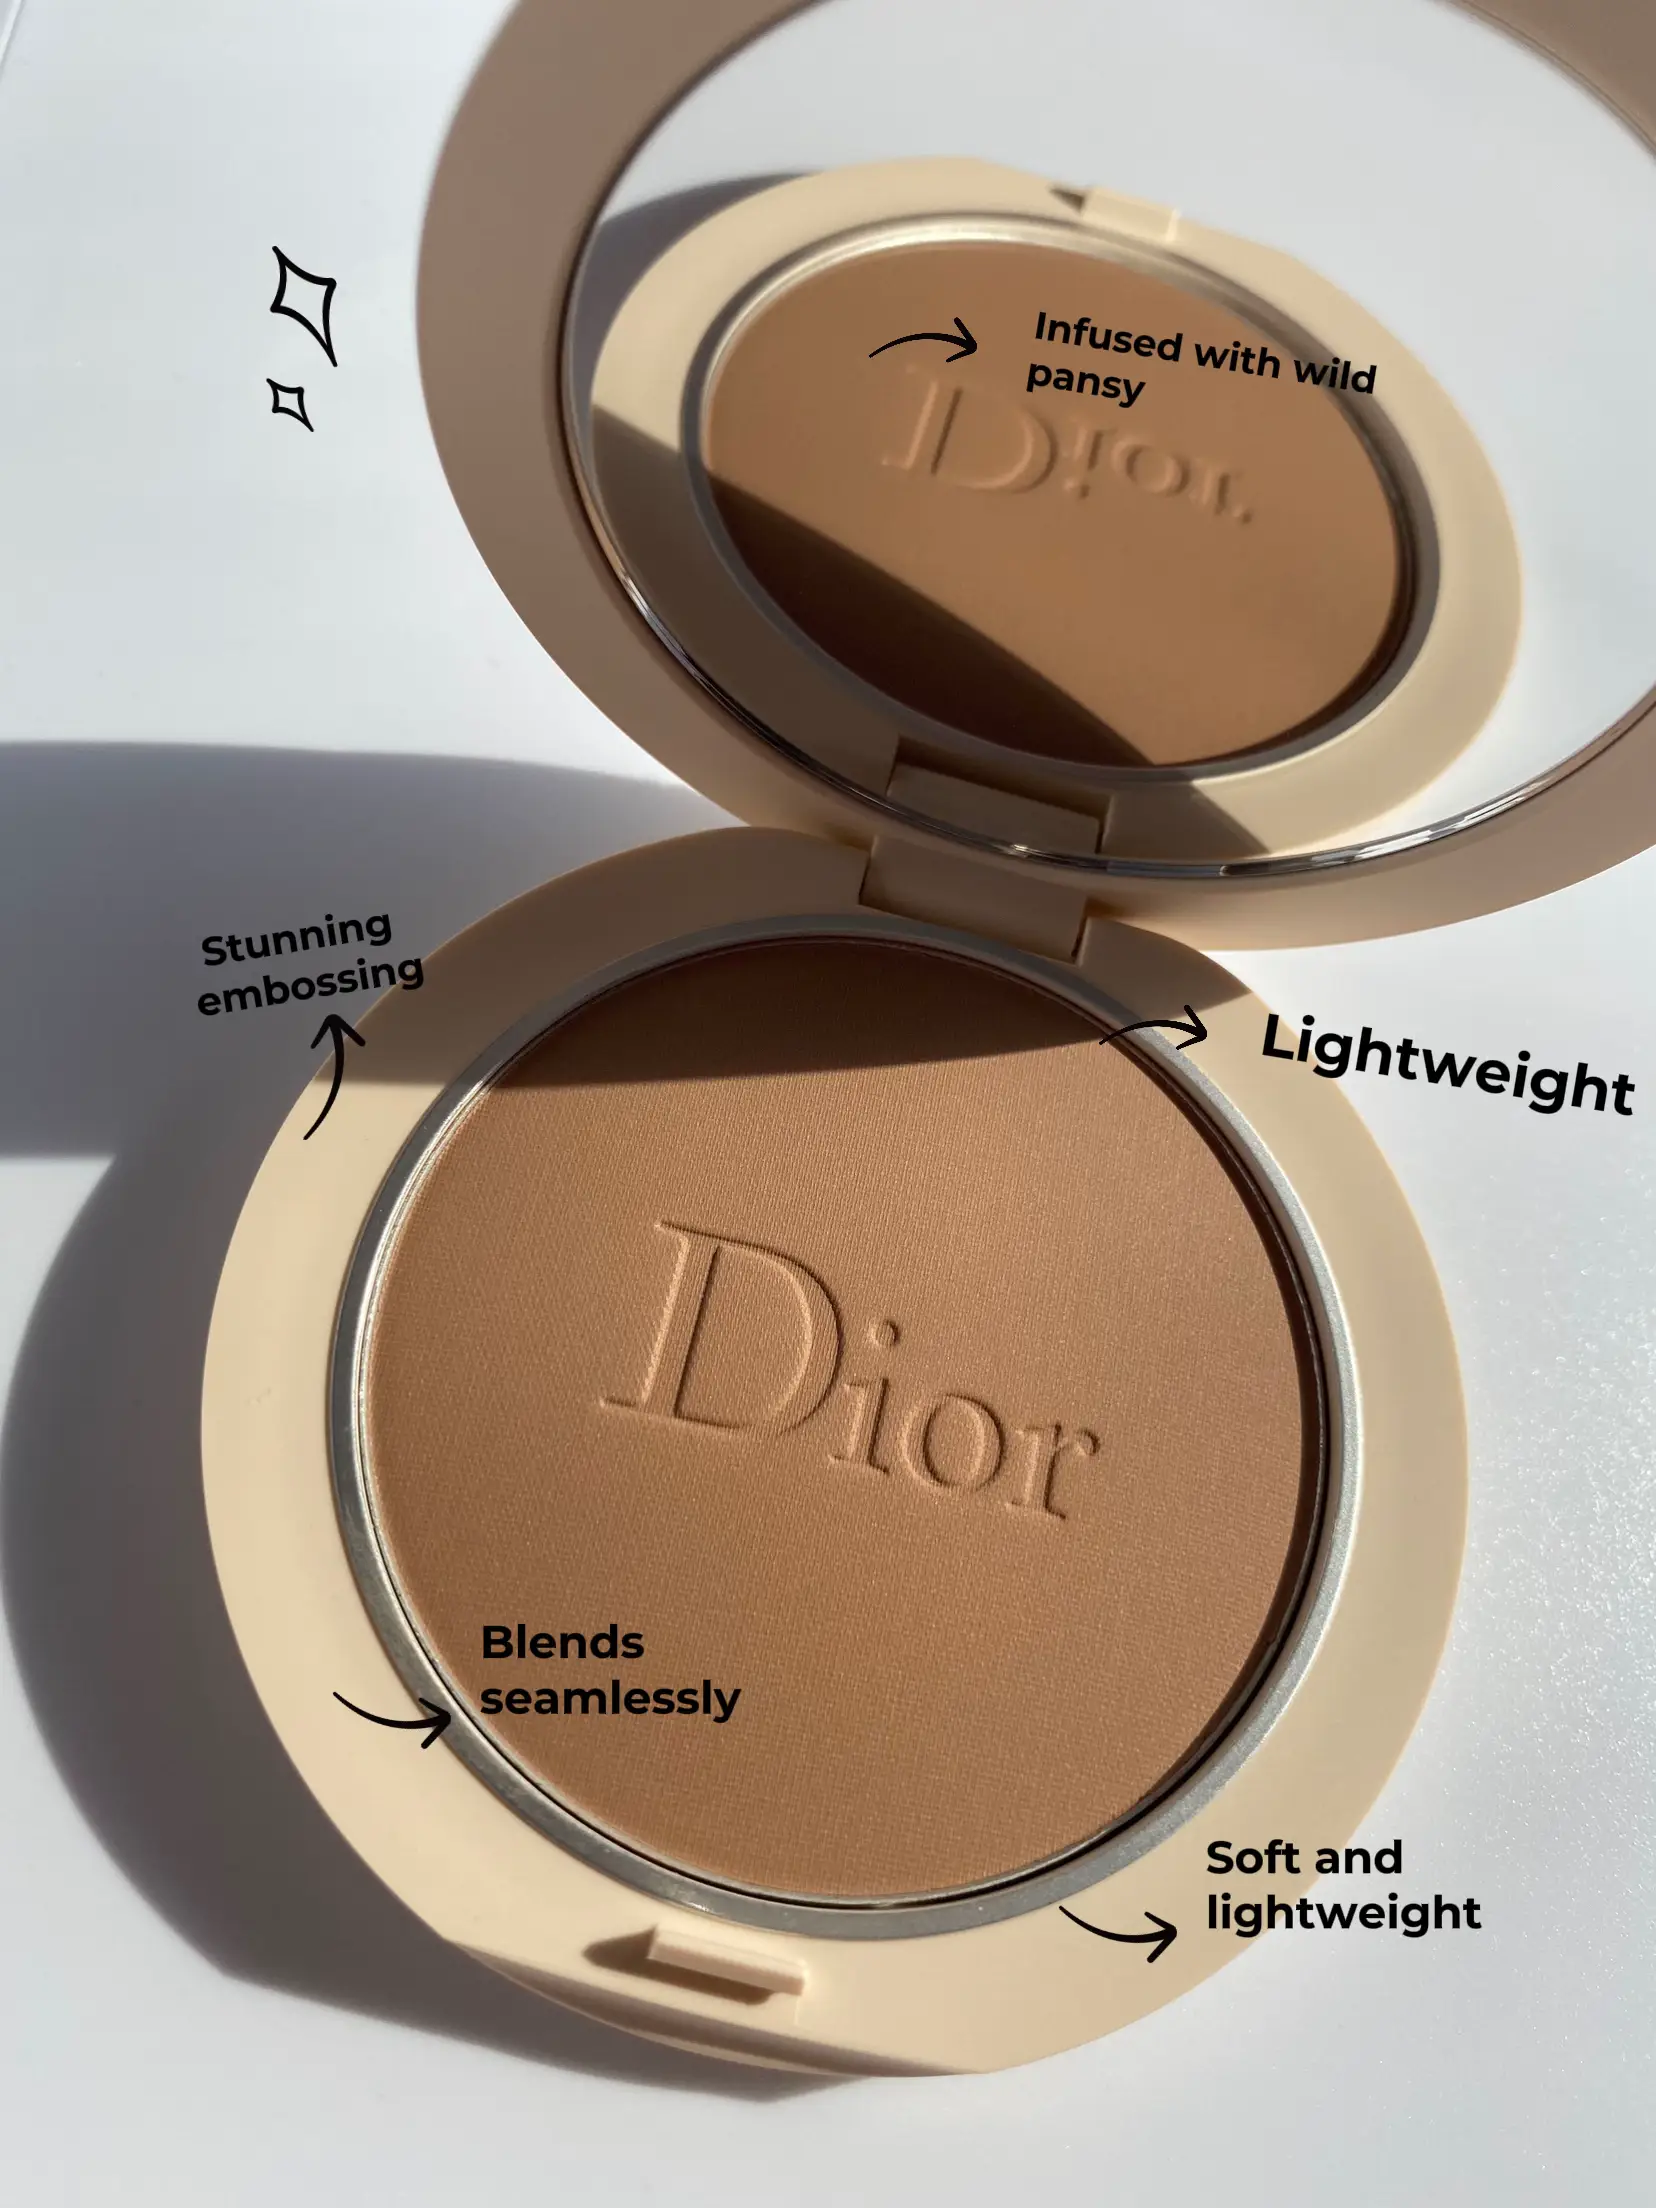 Dior Forever Natural Bronze Healthy Sunkissed Skin Bronzer 05 (Warm) New in  Box - Biz Republic